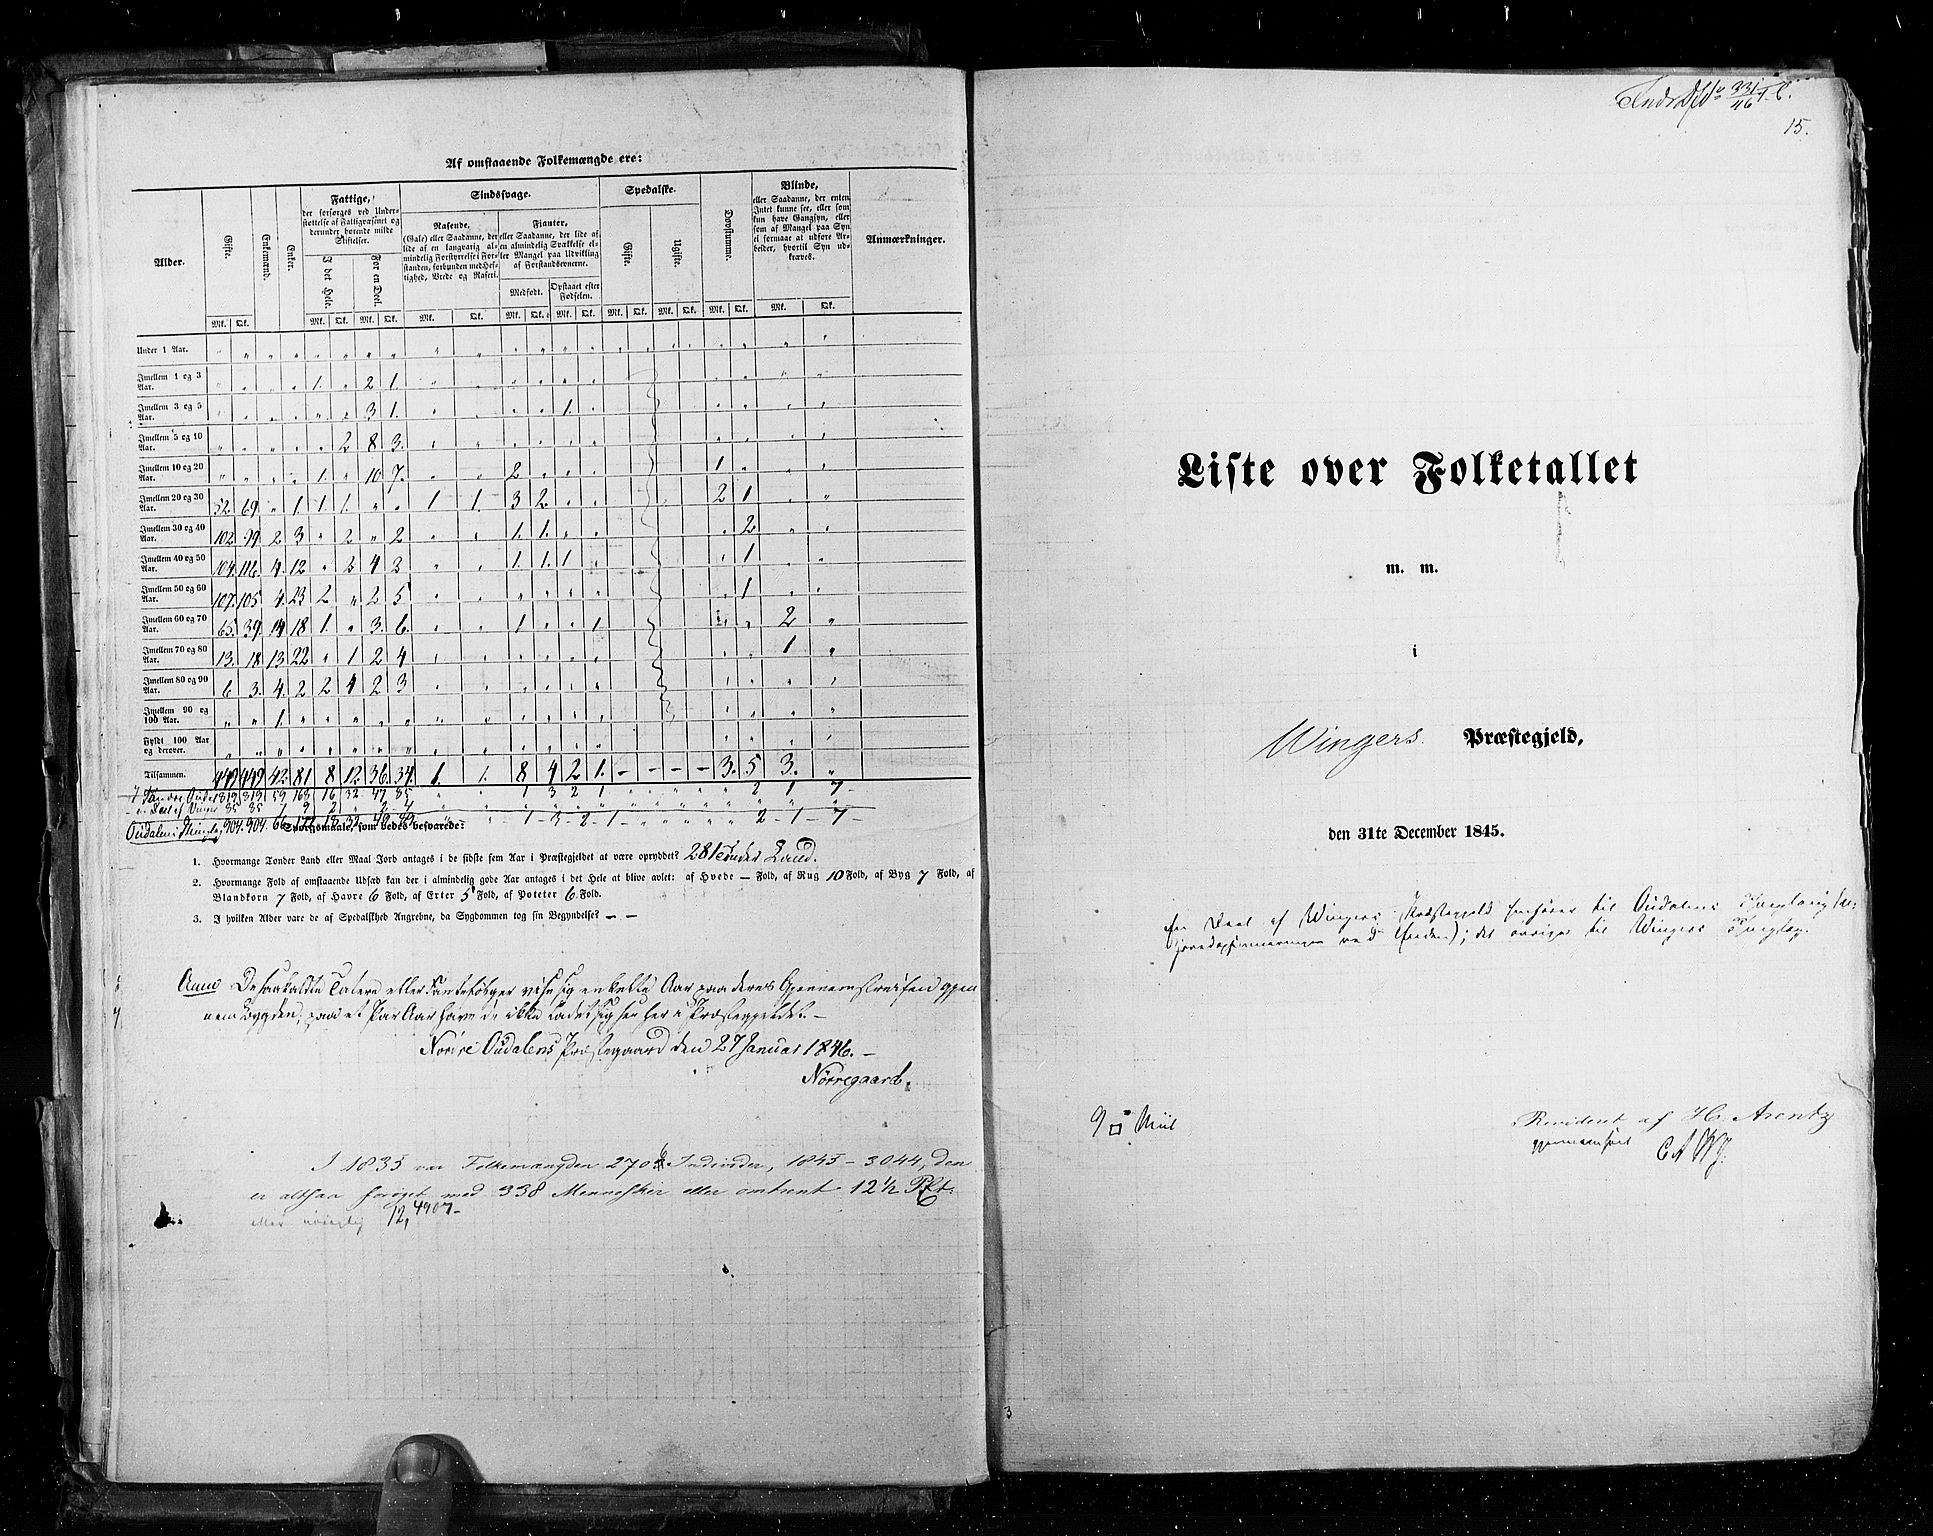 RA, Census 1845, vol. 3: Hedemarken amt og Kristians amt, 1845, p. 15